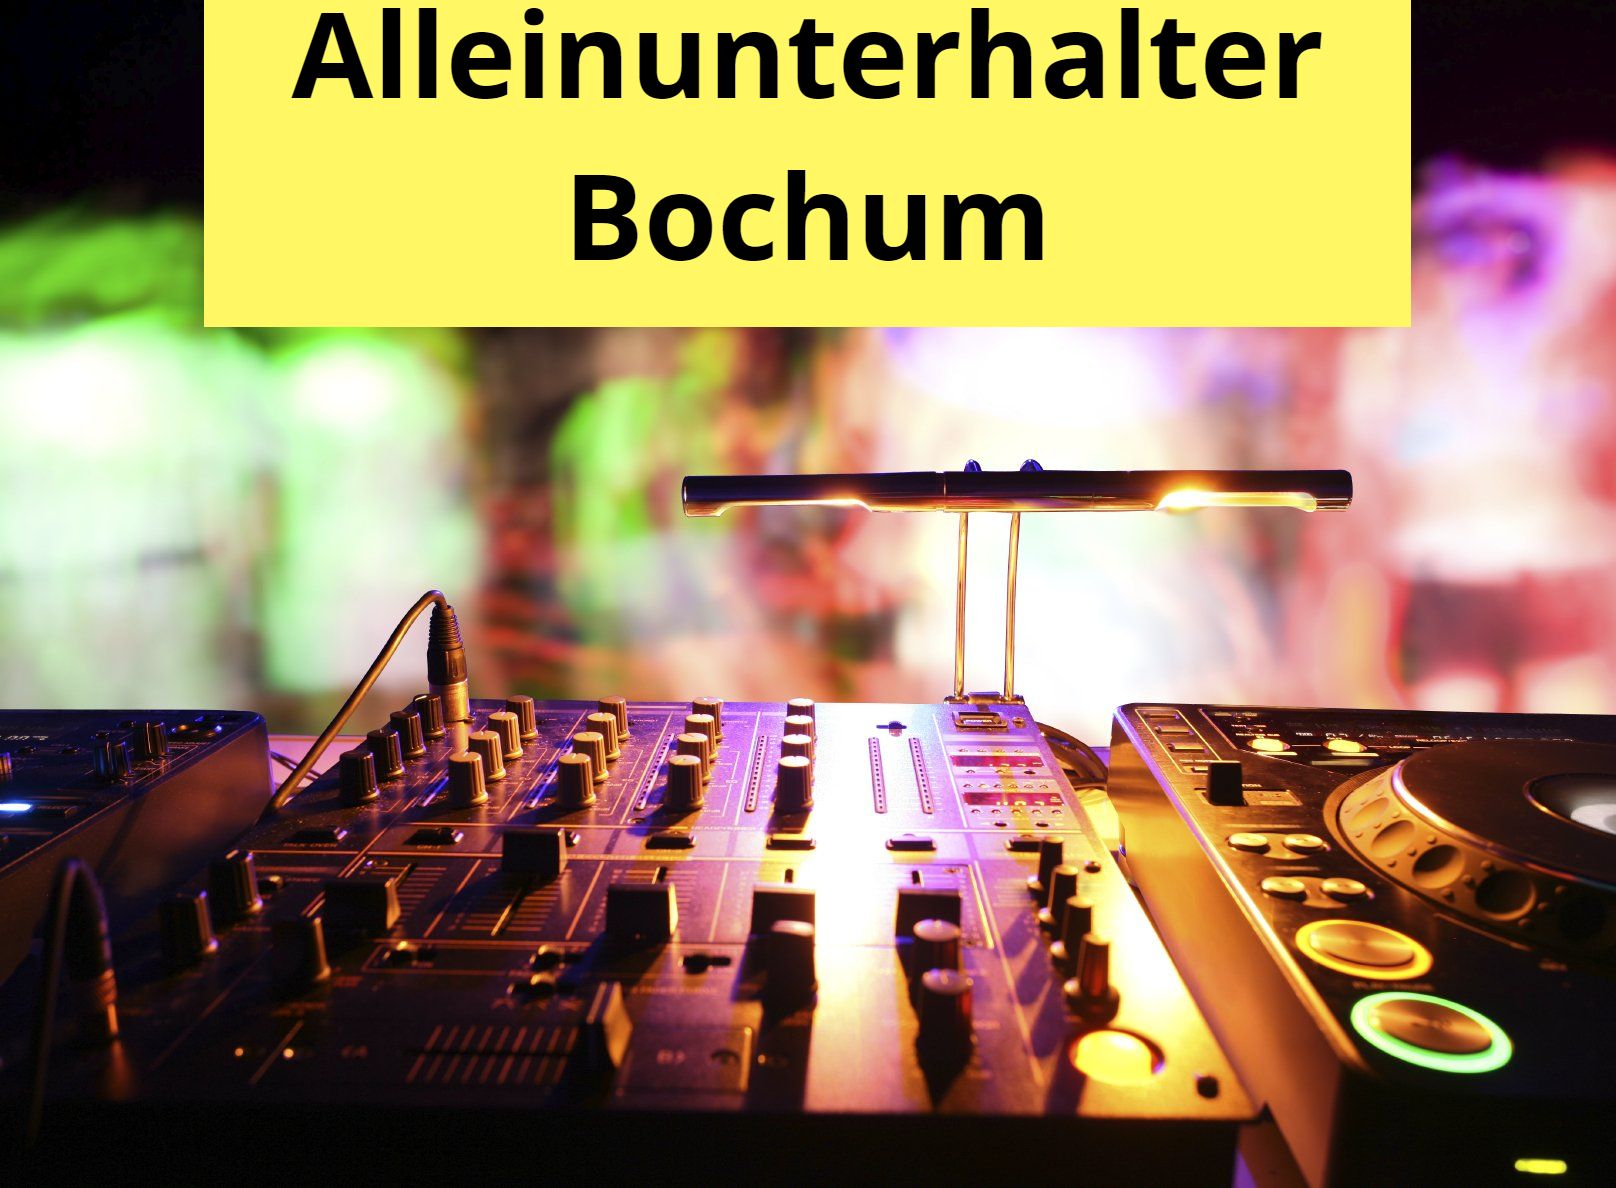 Alleinunterhalter Bochum - DJ Bochum - Live Musik Bochum - Super Musik und Licht Technik - Alles Inklusive